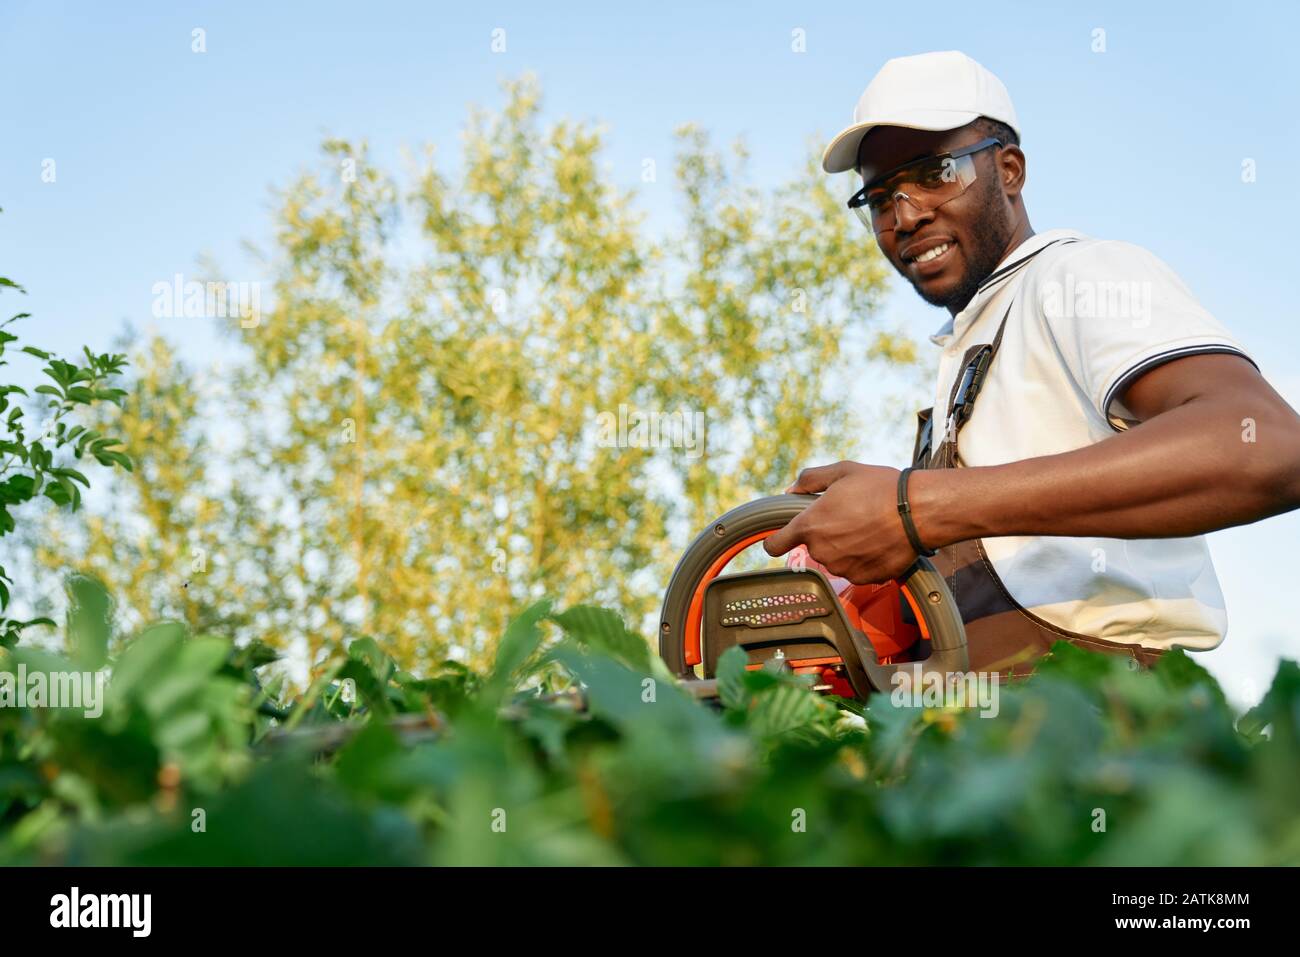 Jardinier africain souriant dans des lunettes de protection élaçant des buissons verts avec un gros taille-haie. Heureux jeune homme en uniforme spécial pendant le processus de travail sur l'air frais Banque D'Images